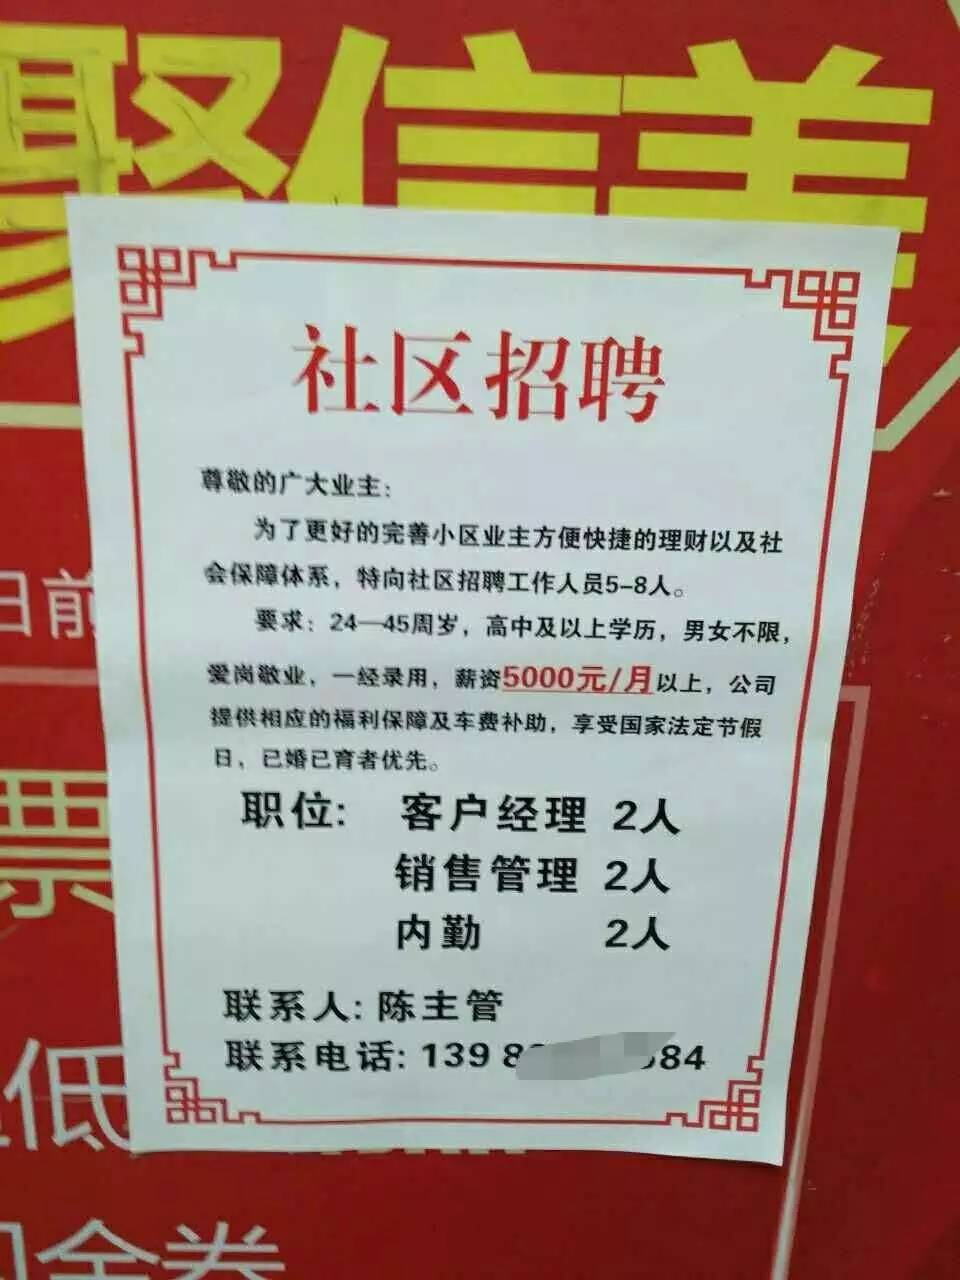 莫上当 这些贴满重庆各小区的招聘广告 背后竟